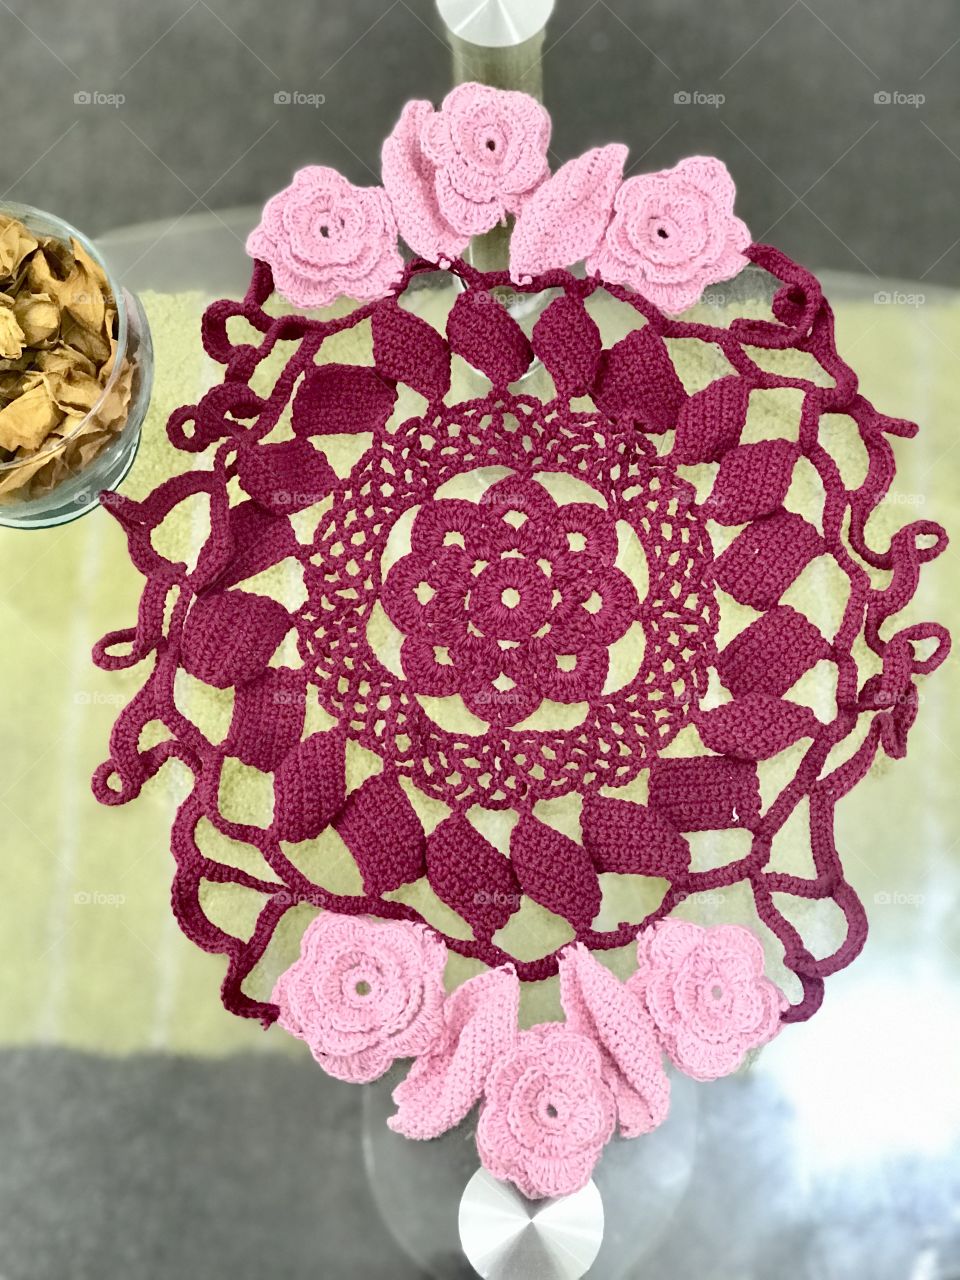 Crochet flower doily
